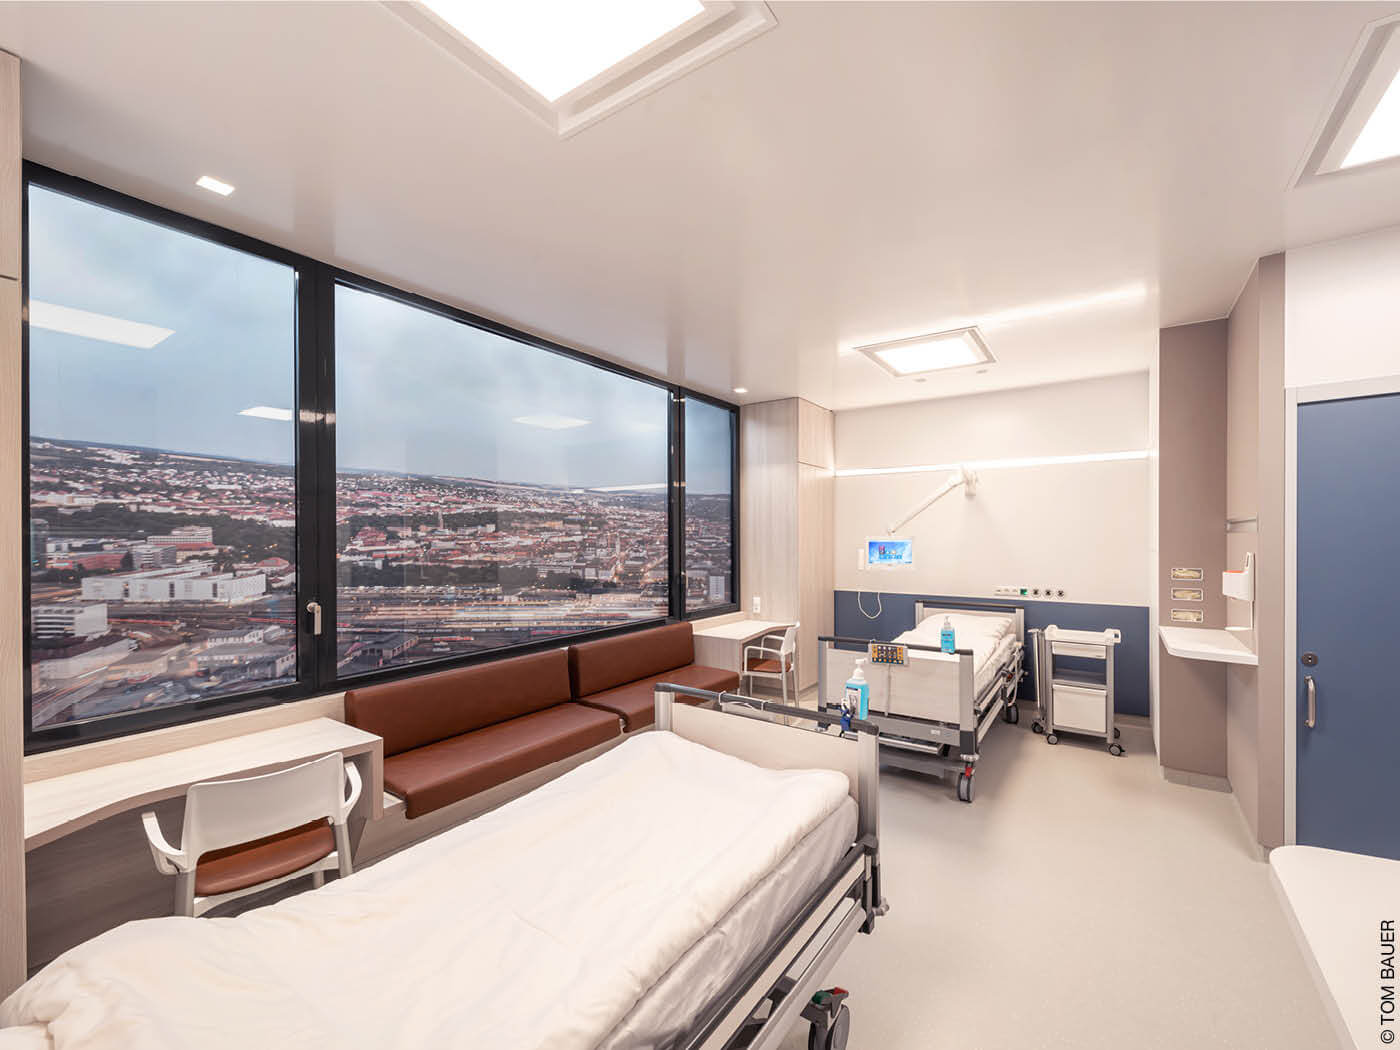 Zweibettzimmer in einem Krankenhaus